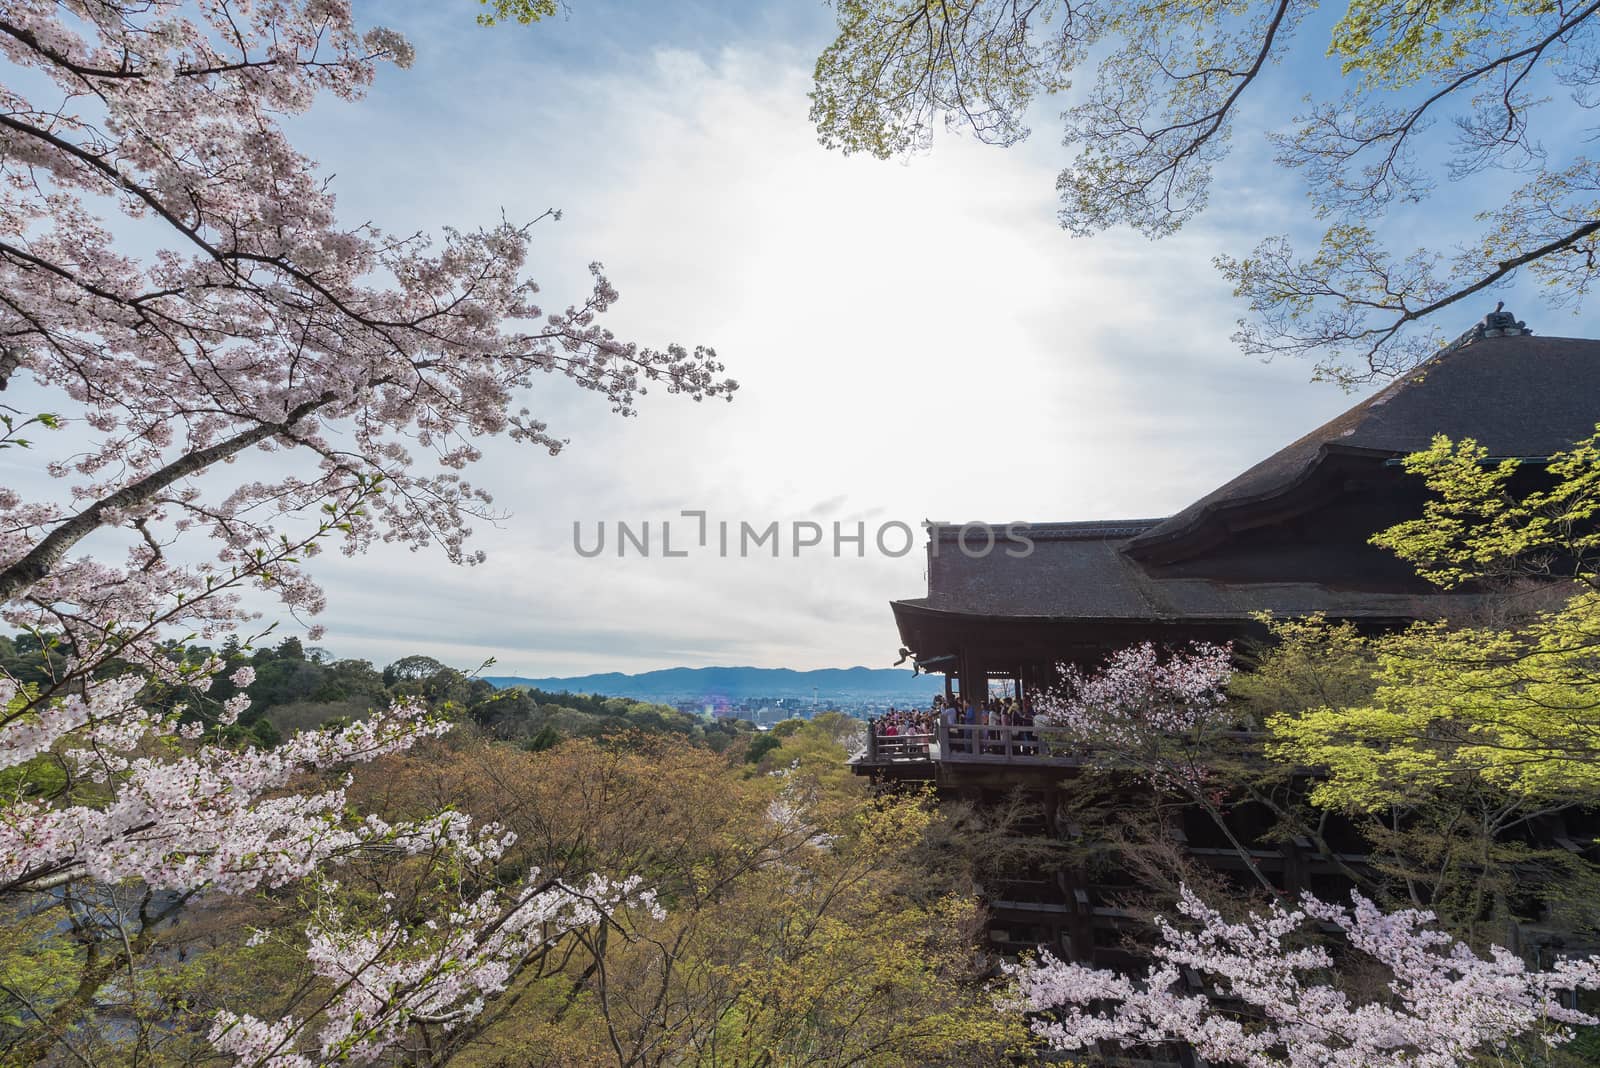 Kiyomizu dera temple and cherry blossom season (Sakura) on sprin by t0pkul3